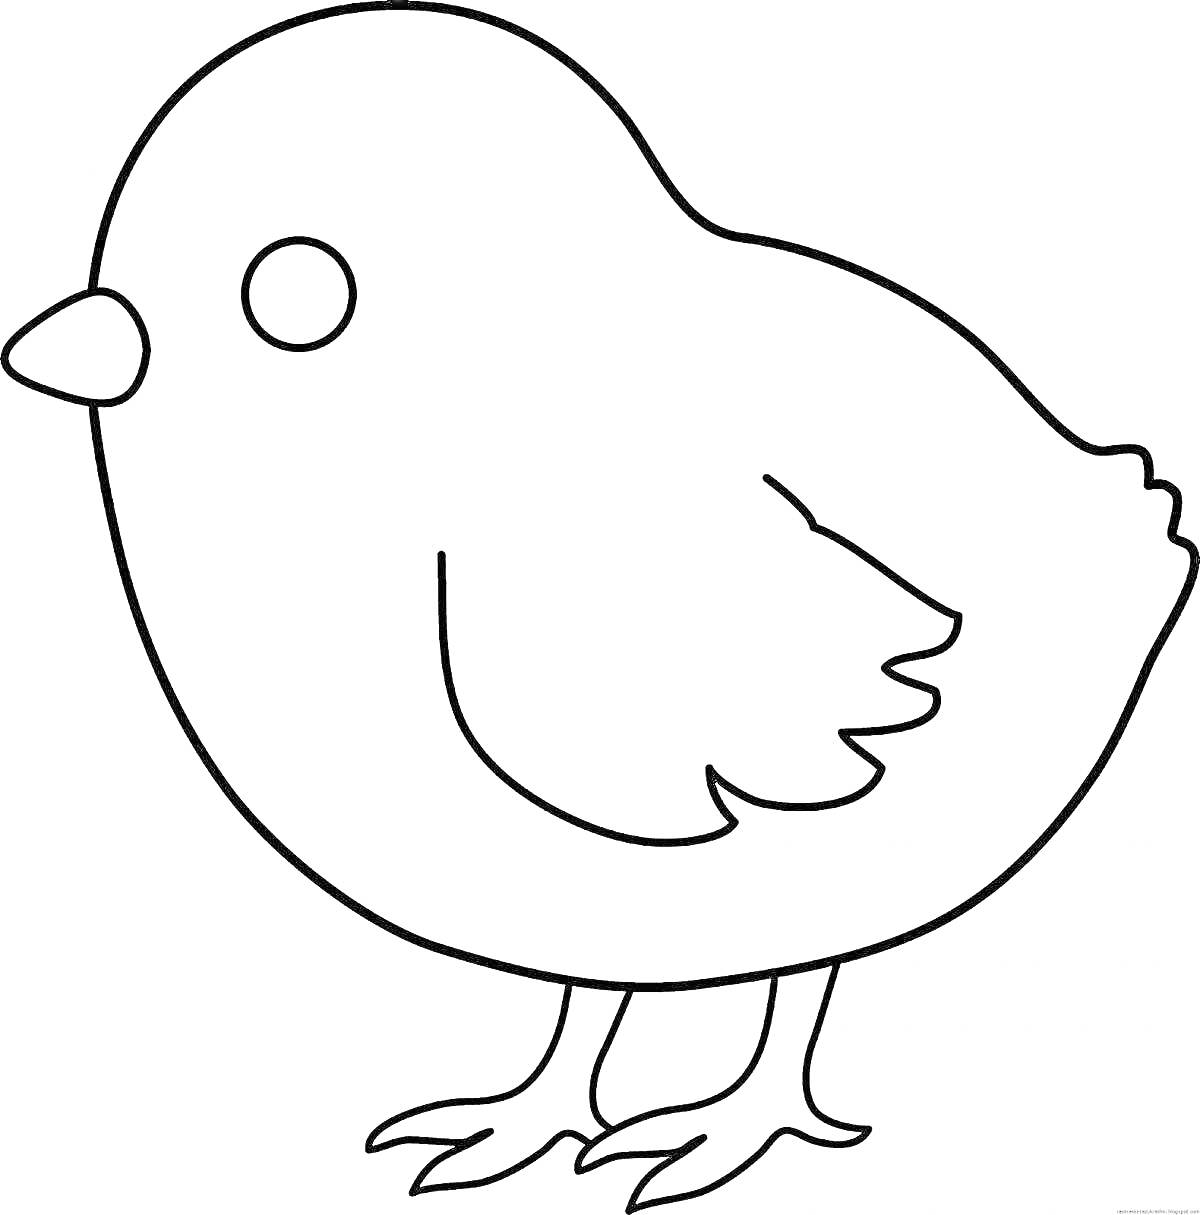 Раскраска Цыпленок в профиль на белом фоне для раскраски